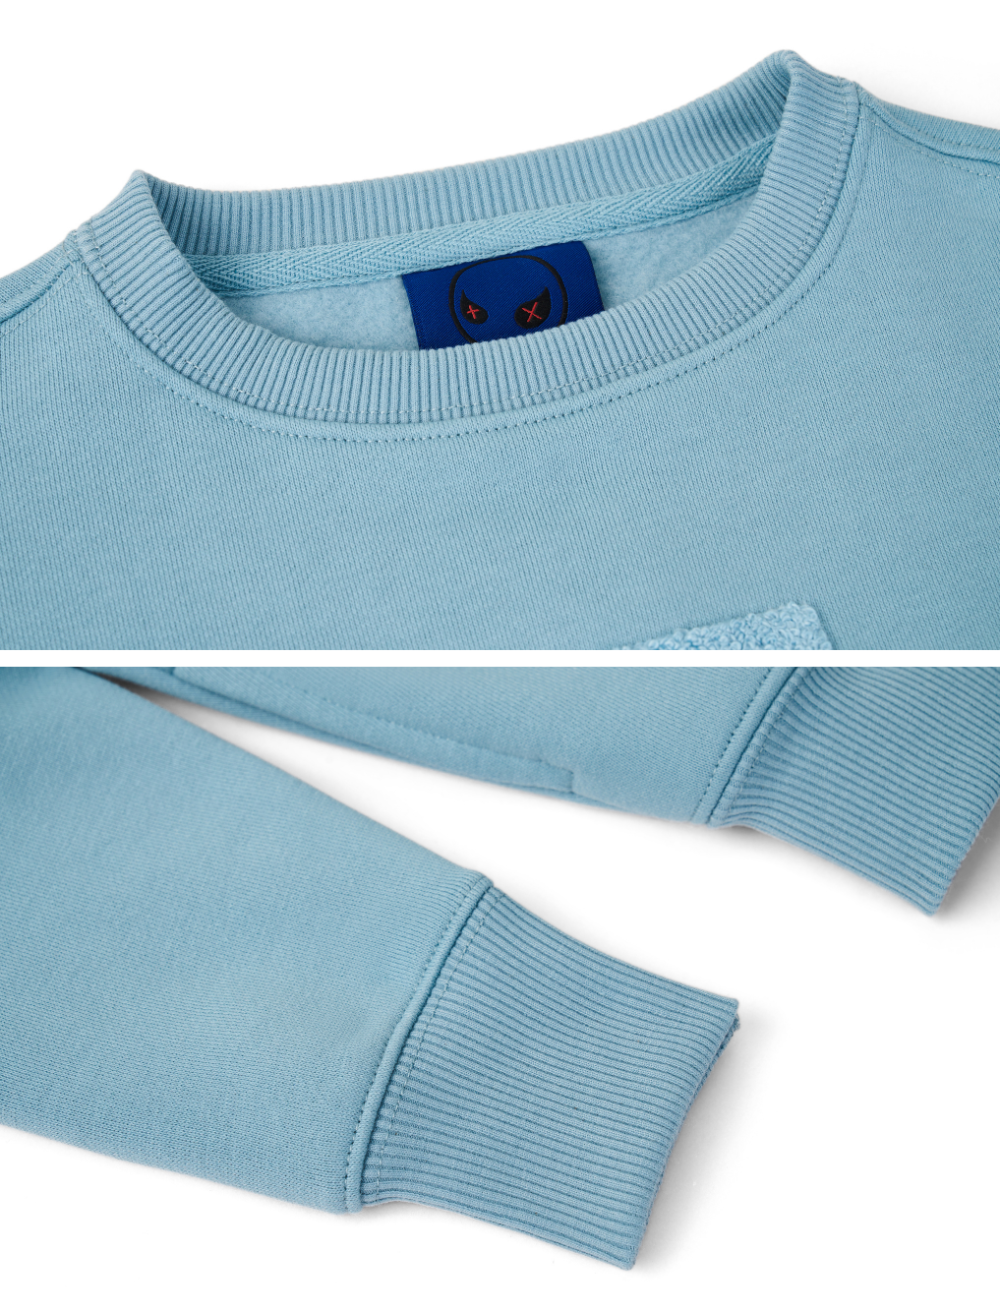 Kids "Pixel" Fog Blue Sweatshirt